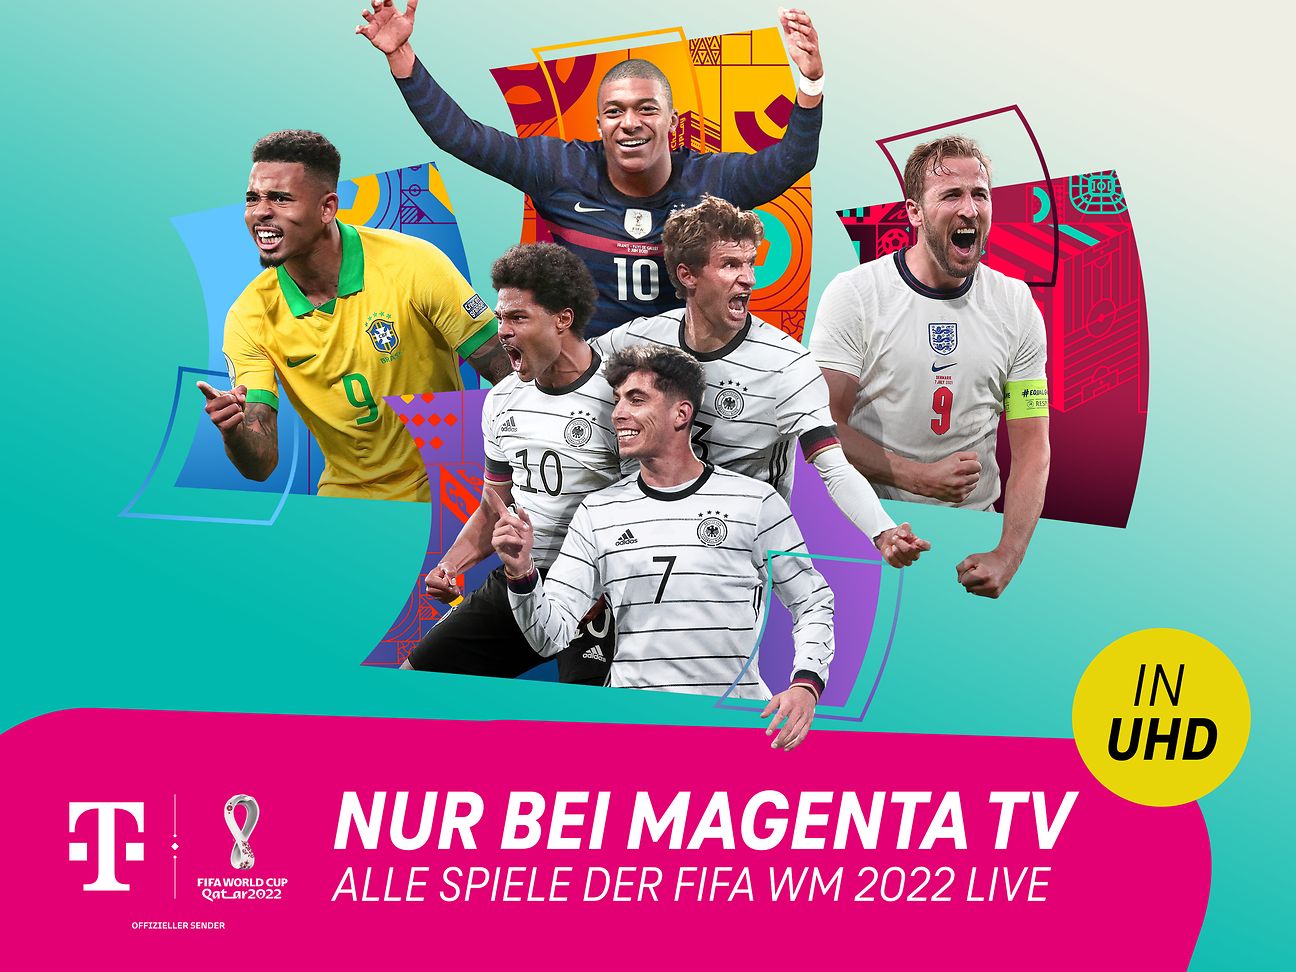 FIFA WM 2022 Alle Spiele nur bei MagentaTV